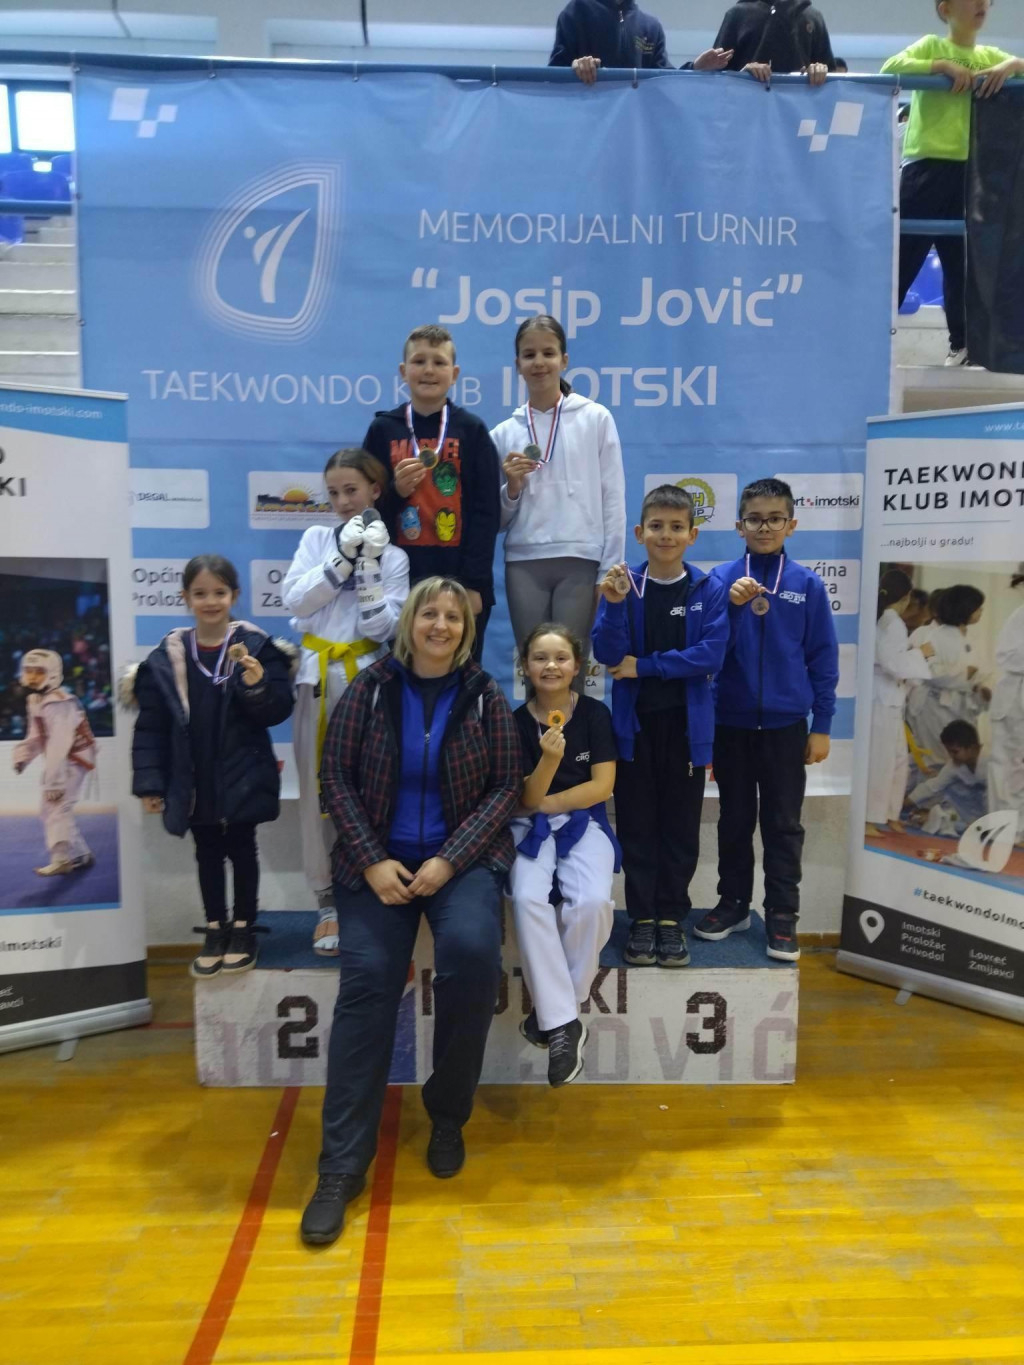 &lt;p&gt;Mostarski Taekwondo klub Cro Star nastupio na Memorijalnom turniru Josip Jović u Imotskom&lt;/p&gt;
